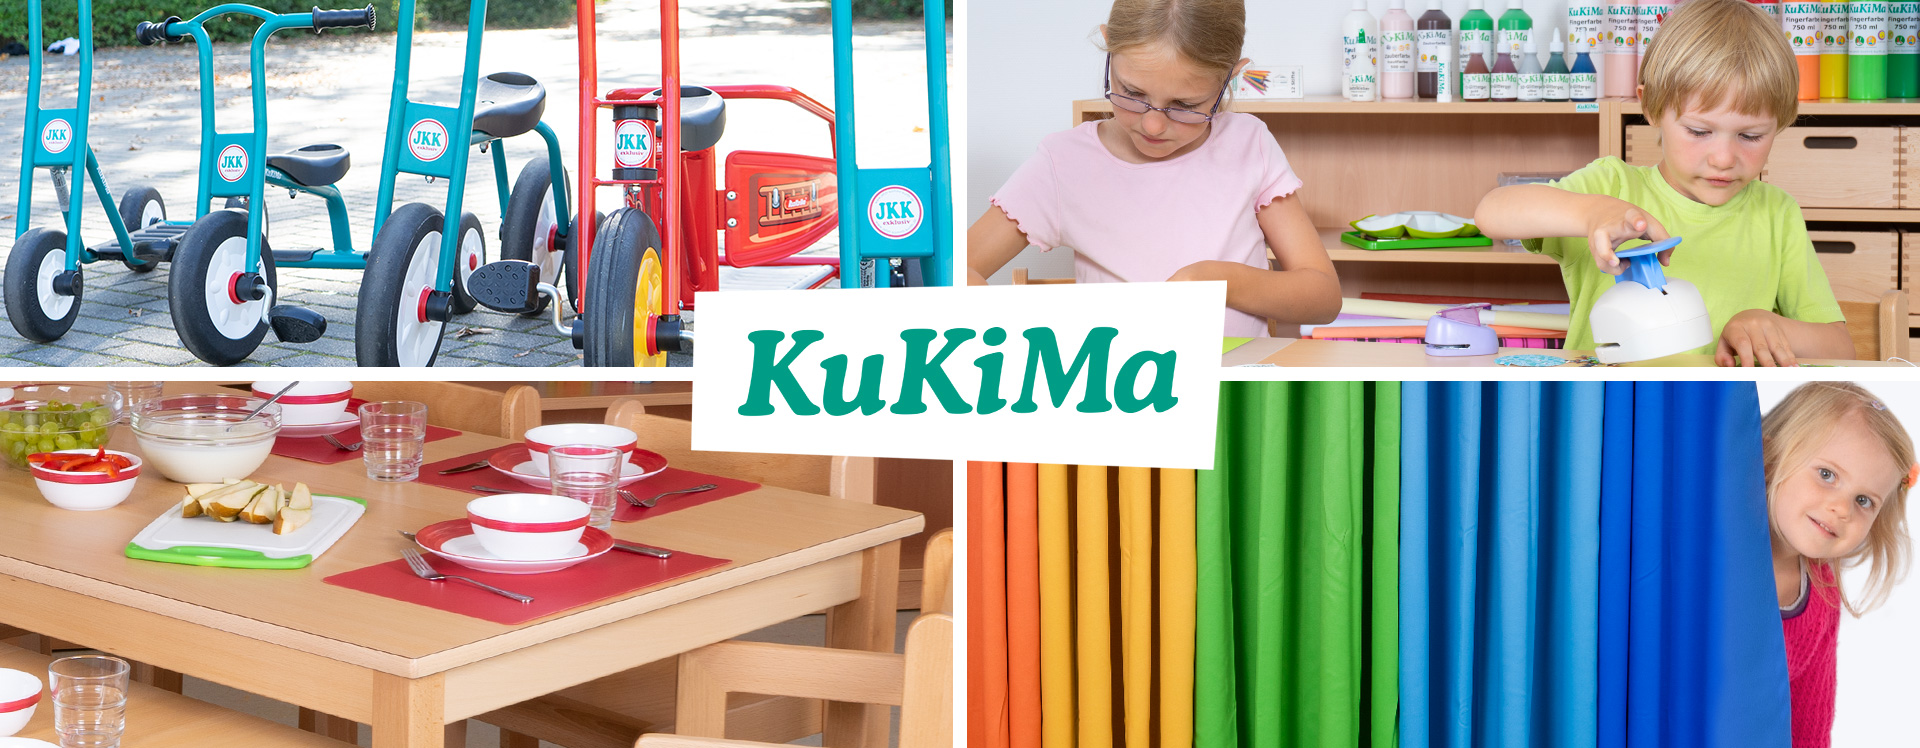 KuKiMa - Collage aus 4 Bildern